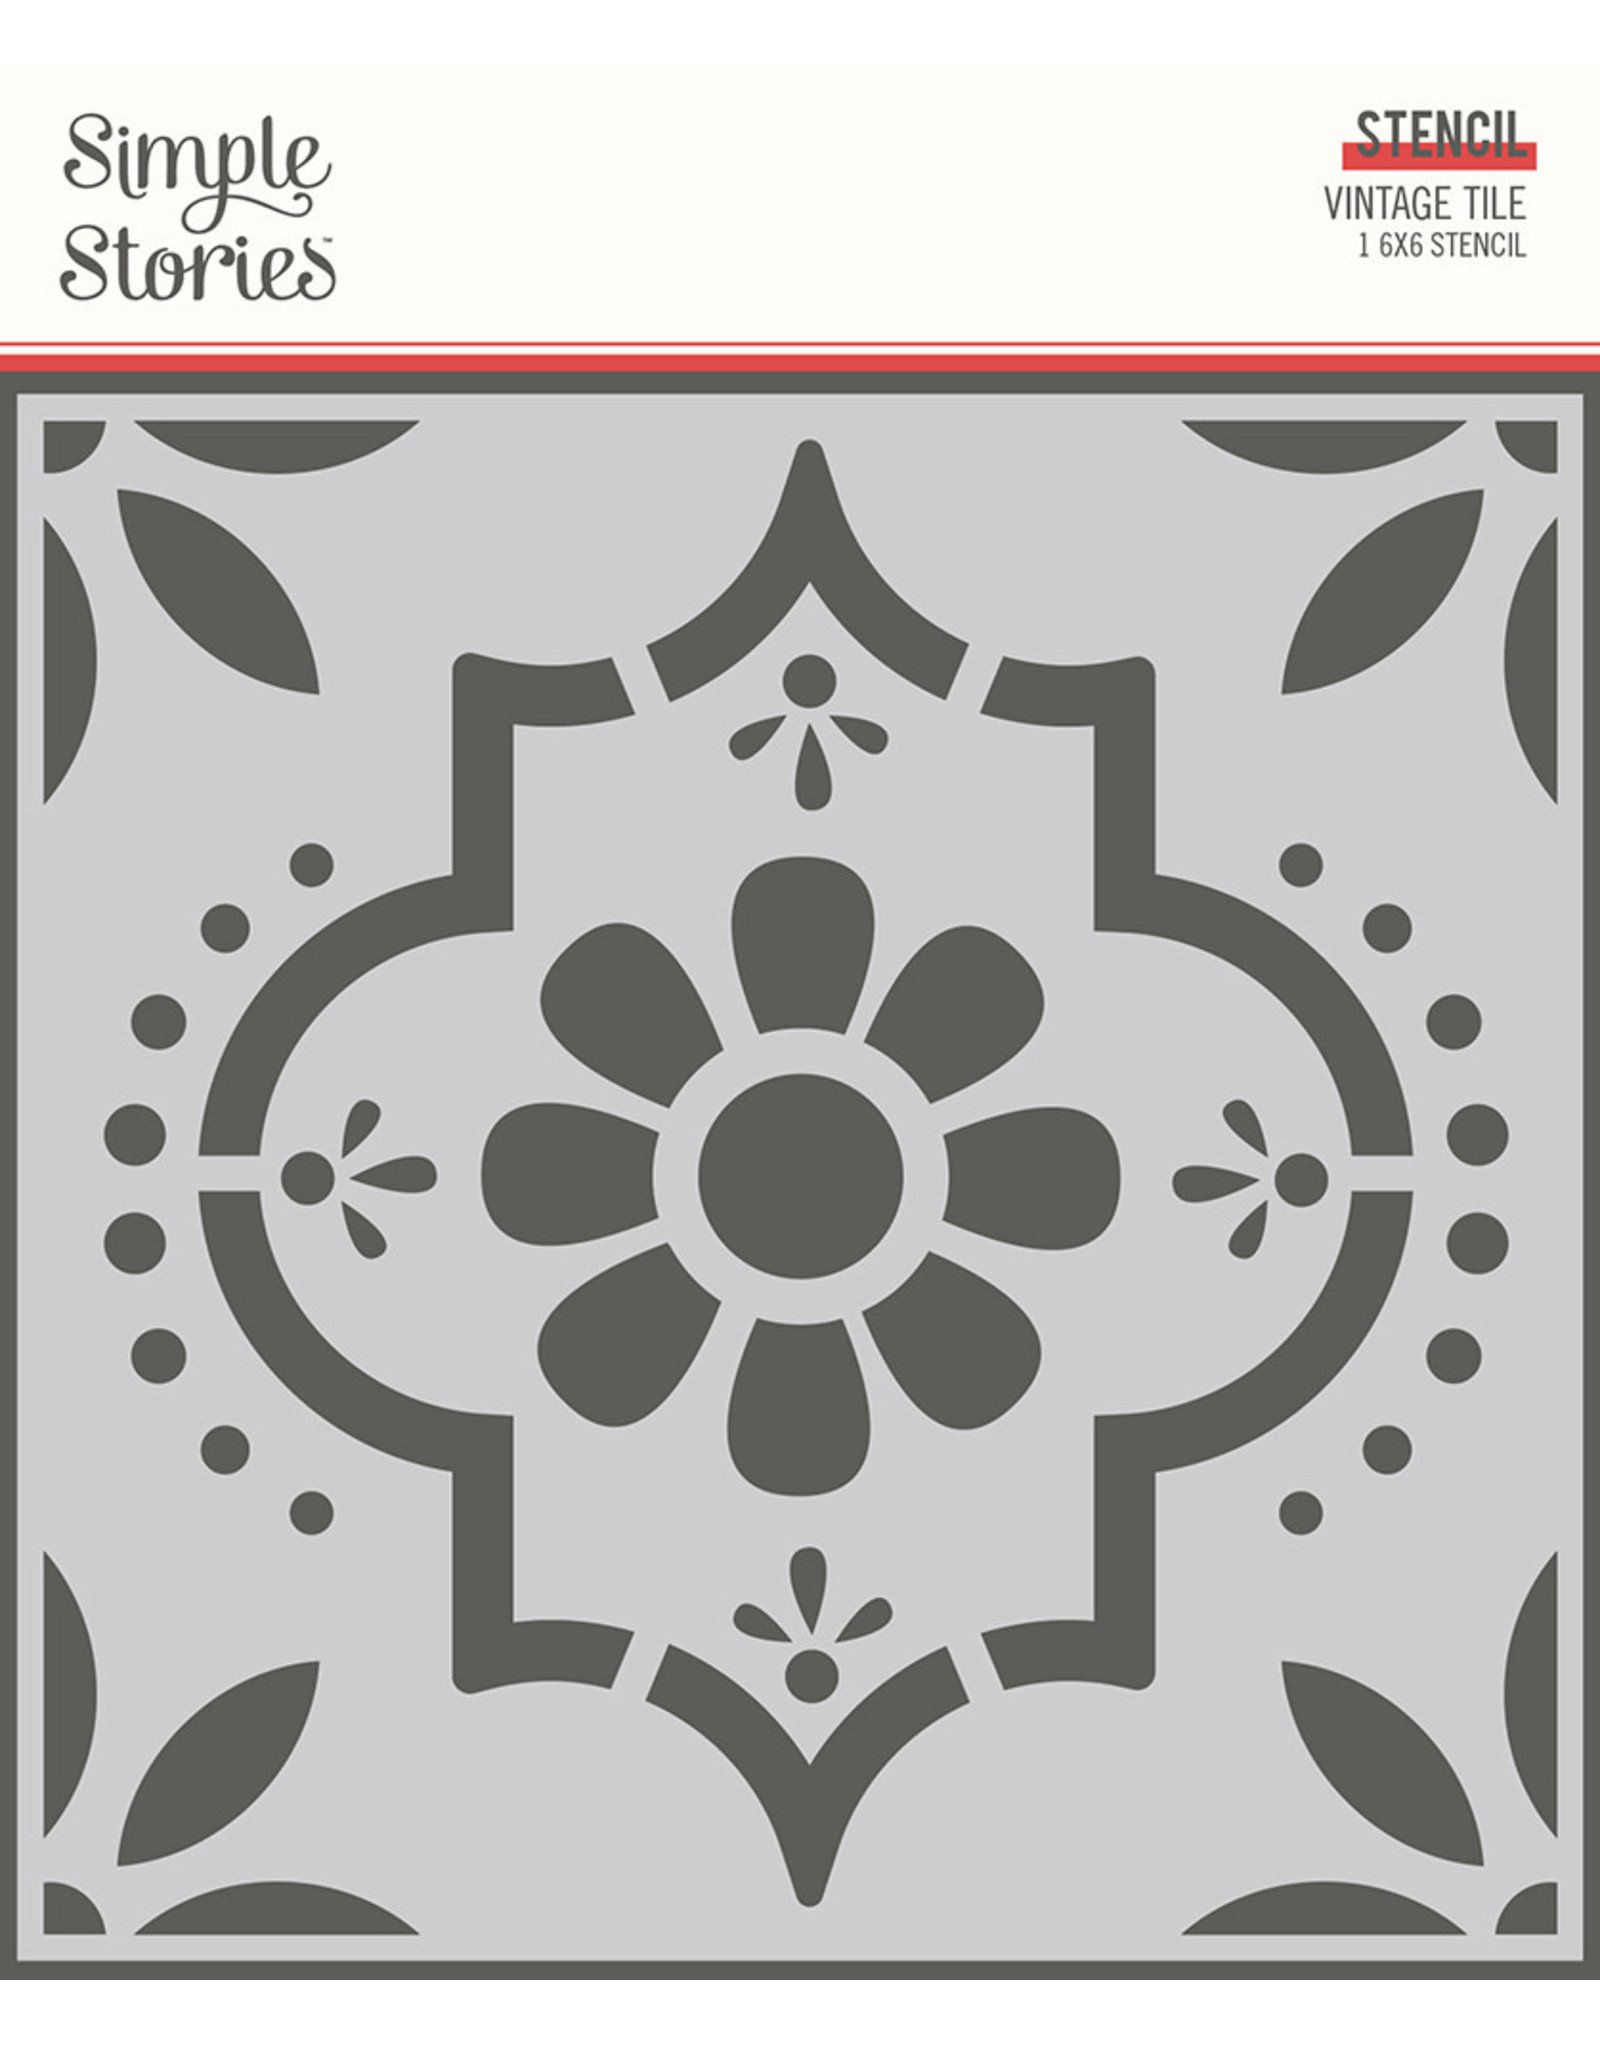 Simple Stories Apron Strings  -  6x6 Stencil- Vintage Tile